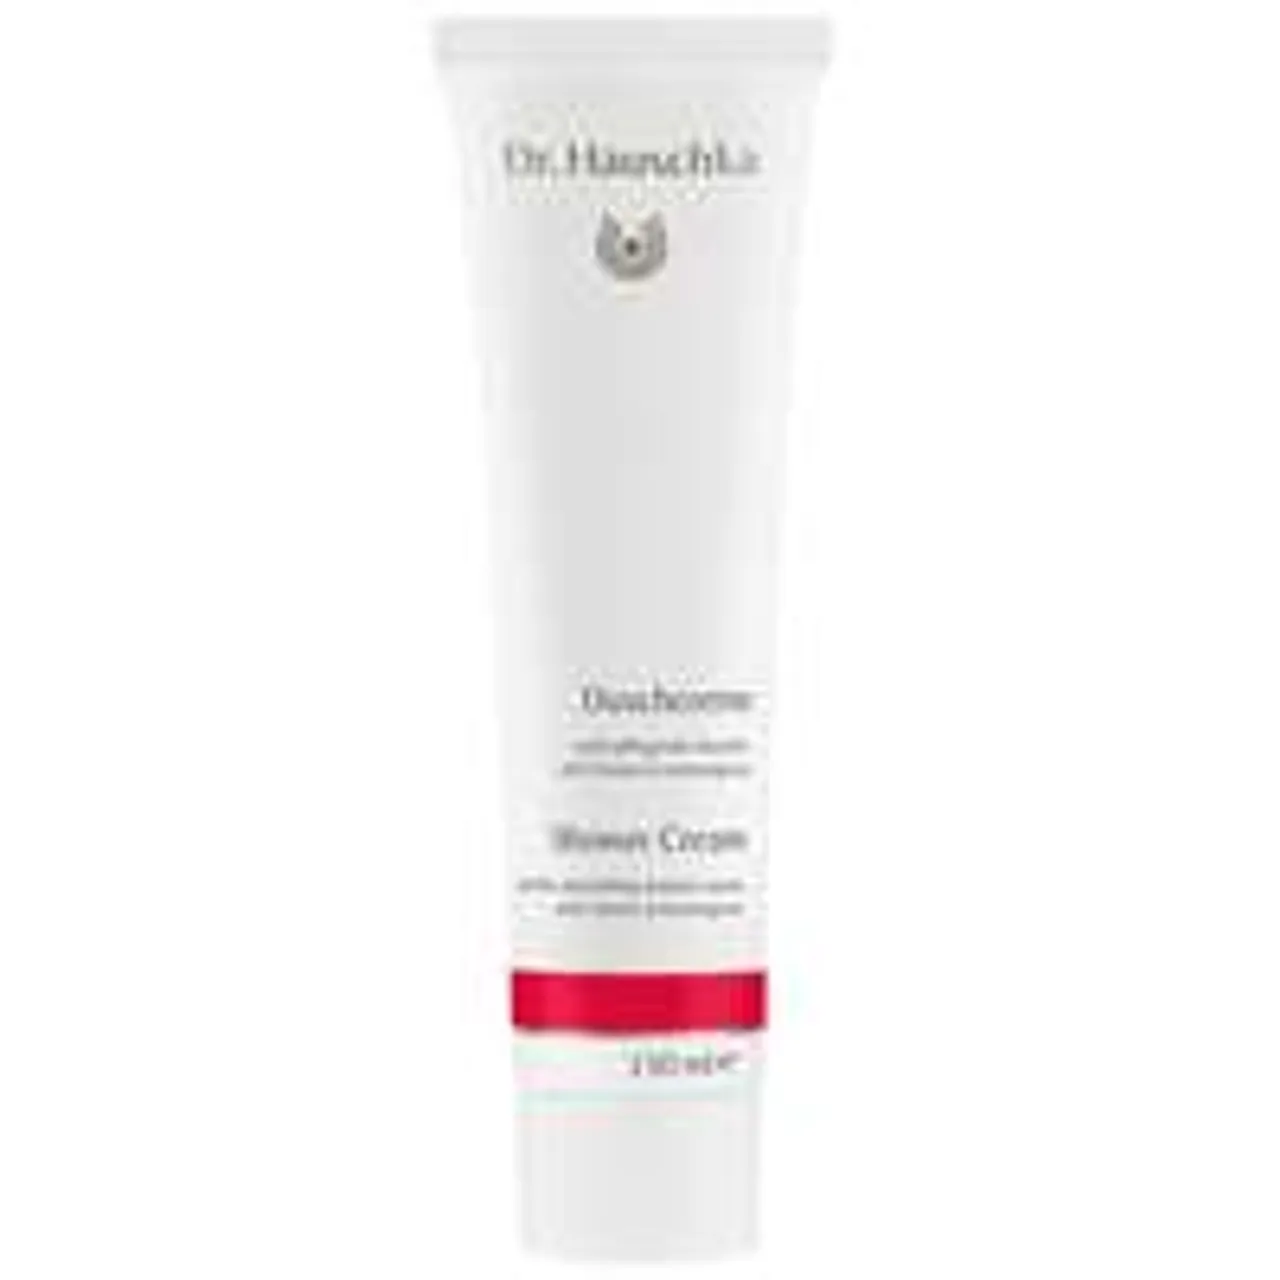 Dr. Hauschka Body Washes Shower Cream 150ml